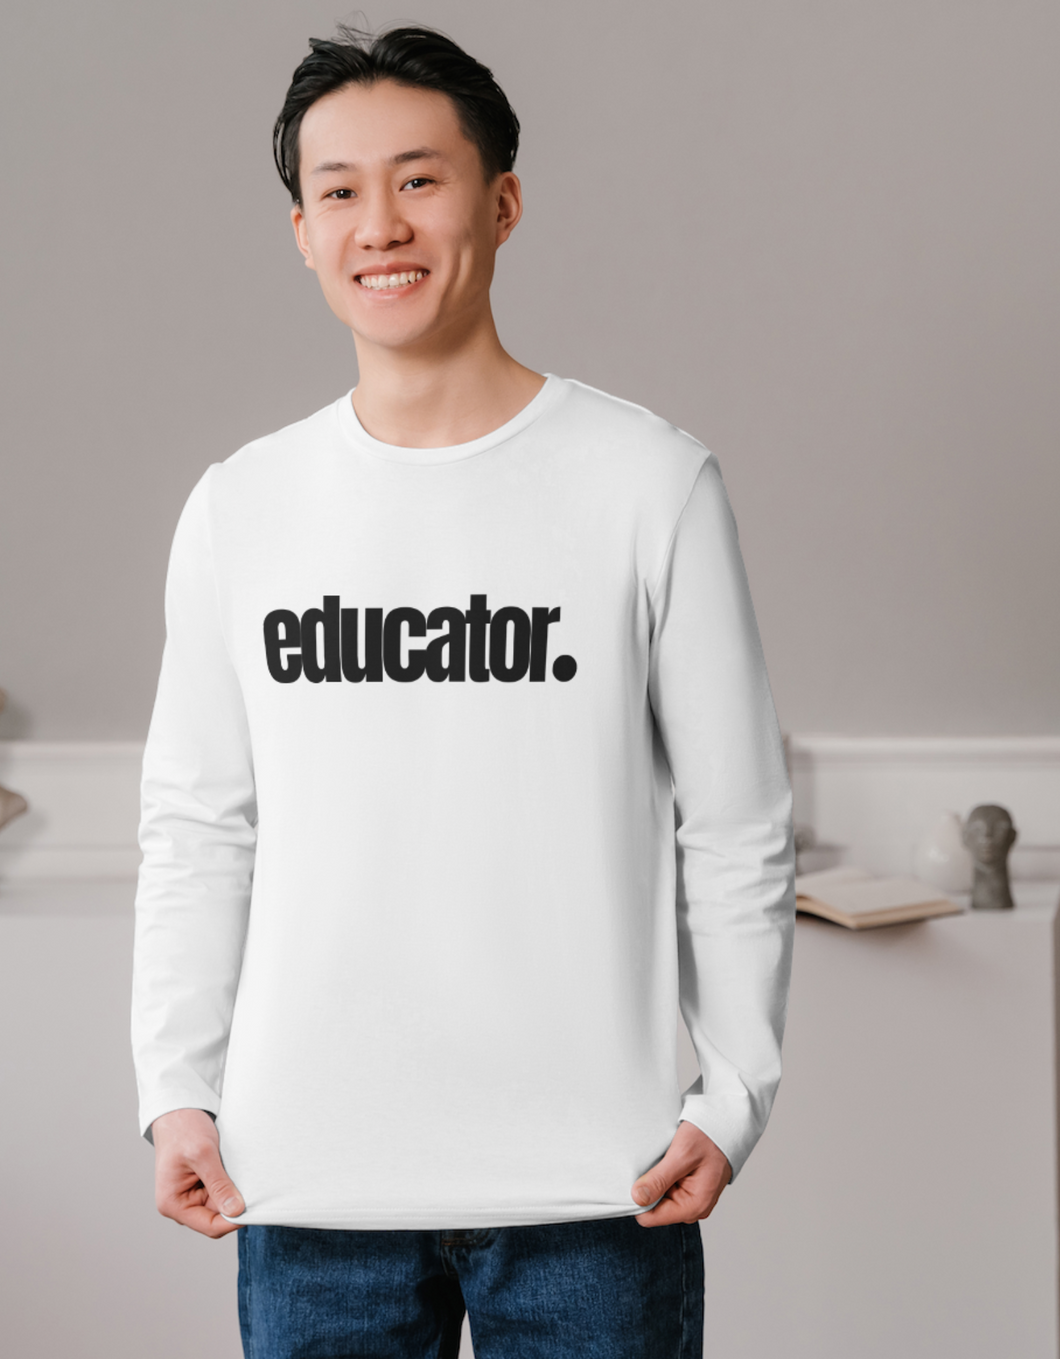 Educator. Men's Long Sleeved Shirt